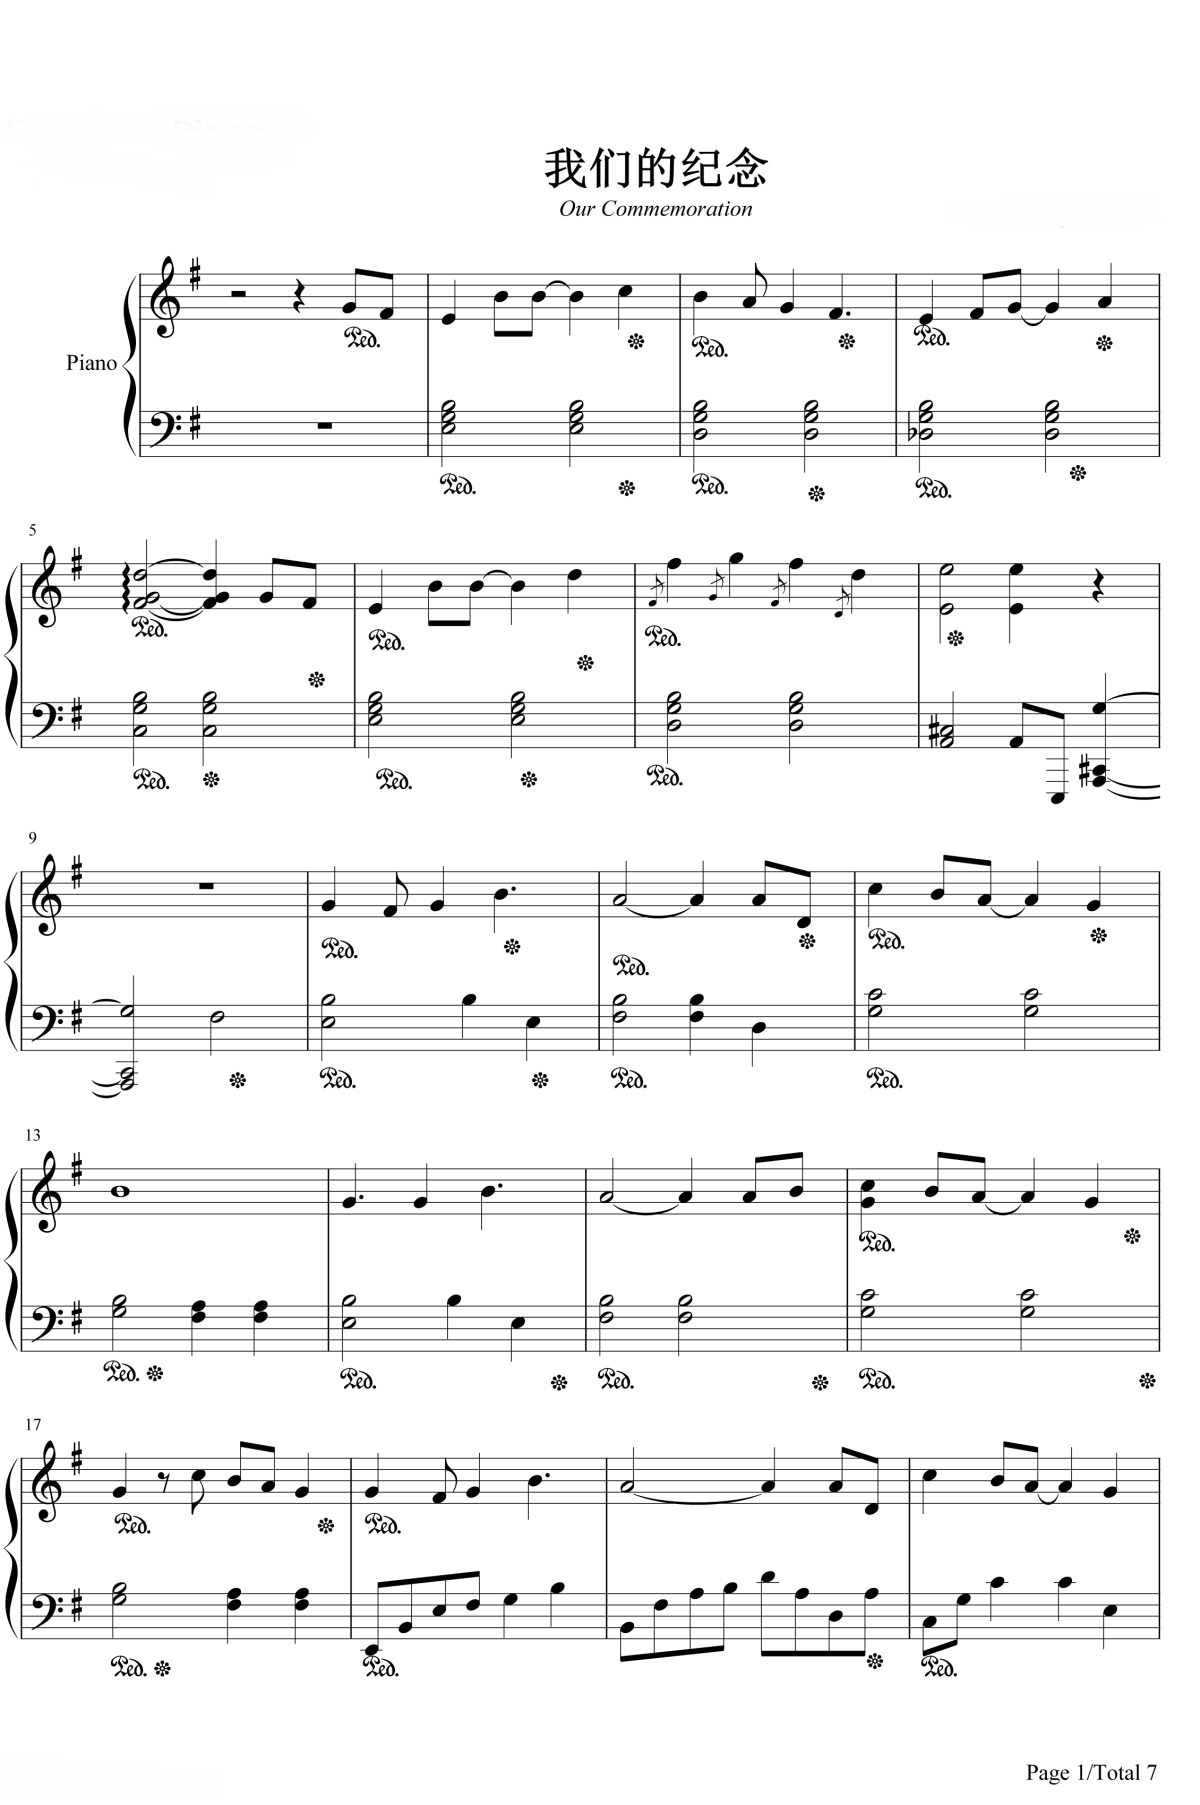 【我们的纪念】的钢琴谱简谱 – 李雅微
